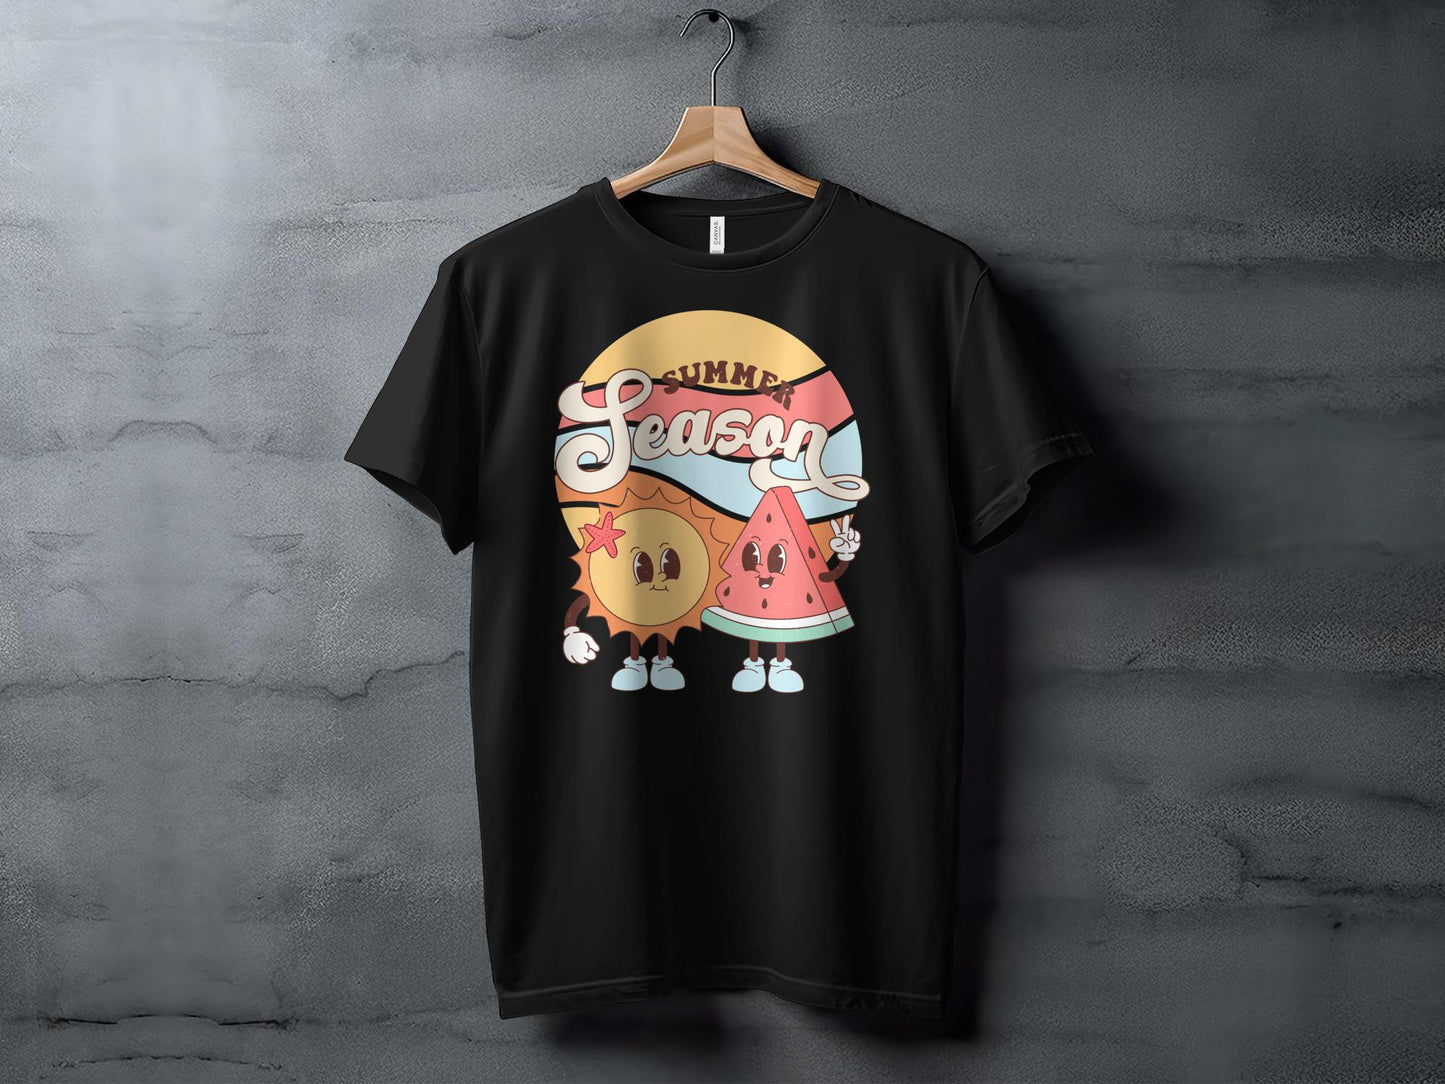 Summer Season Fun T-Shirt, Retro Sun and Watermelon Tee, Cute Cartoon Beachwear, Unisex Graphic Shirt